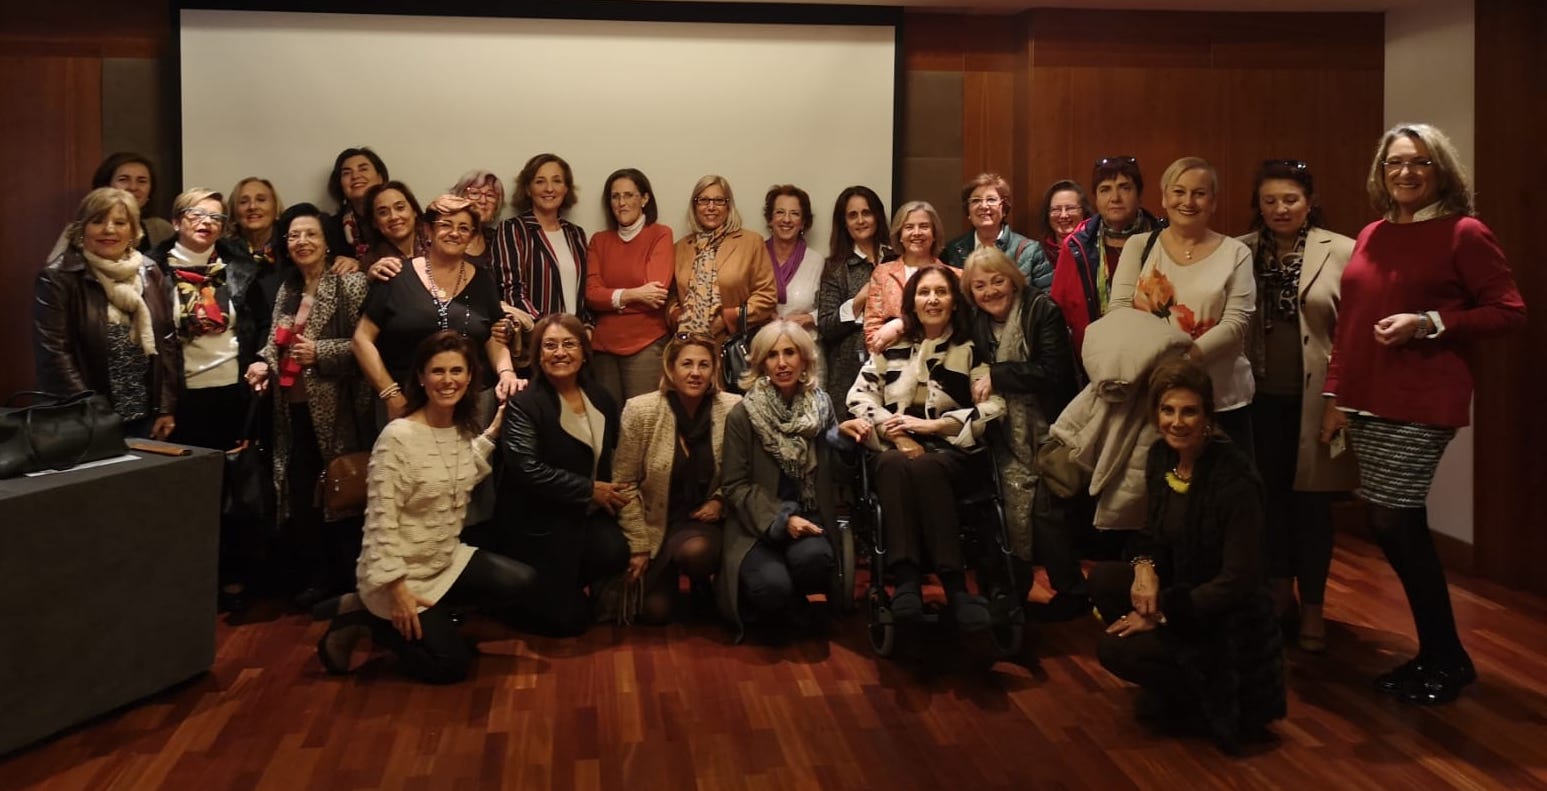 Amaya DirFunda charla Foro Mujeres Almeria.jpg1